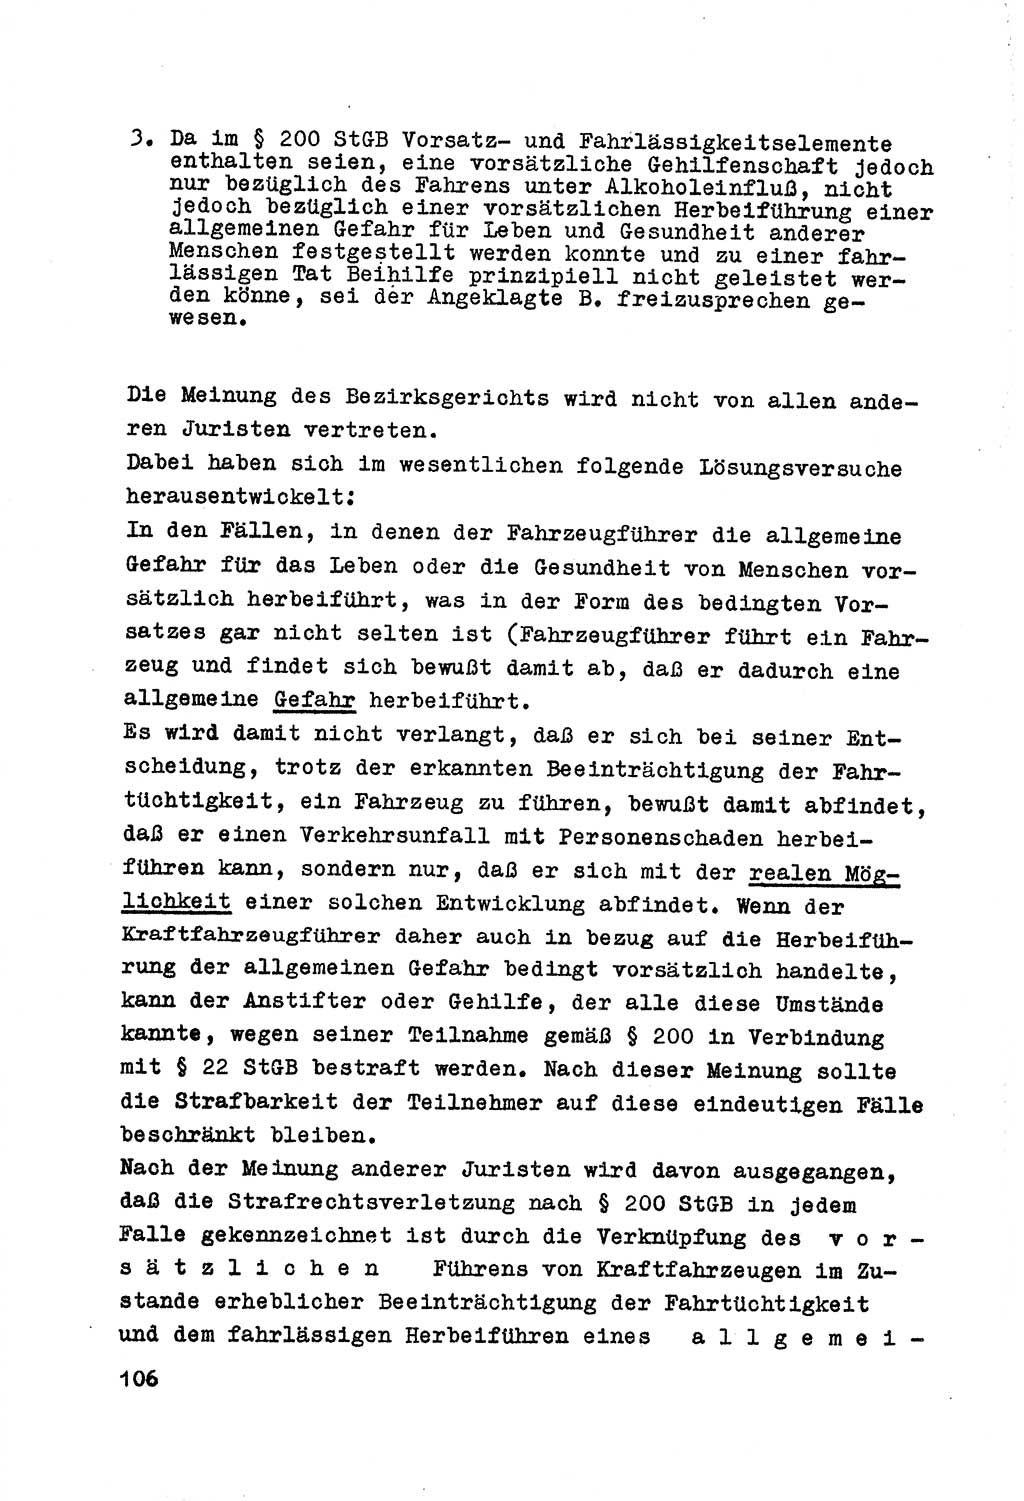 Strafrecht der DDR (Deutsche Demokratische Republik), Besonderer Teil, Lehrmaterial, Heft 7 1970, Seite 106 (Strafr. DDR BT Lehrmat. H. 7 1970, S. 106)